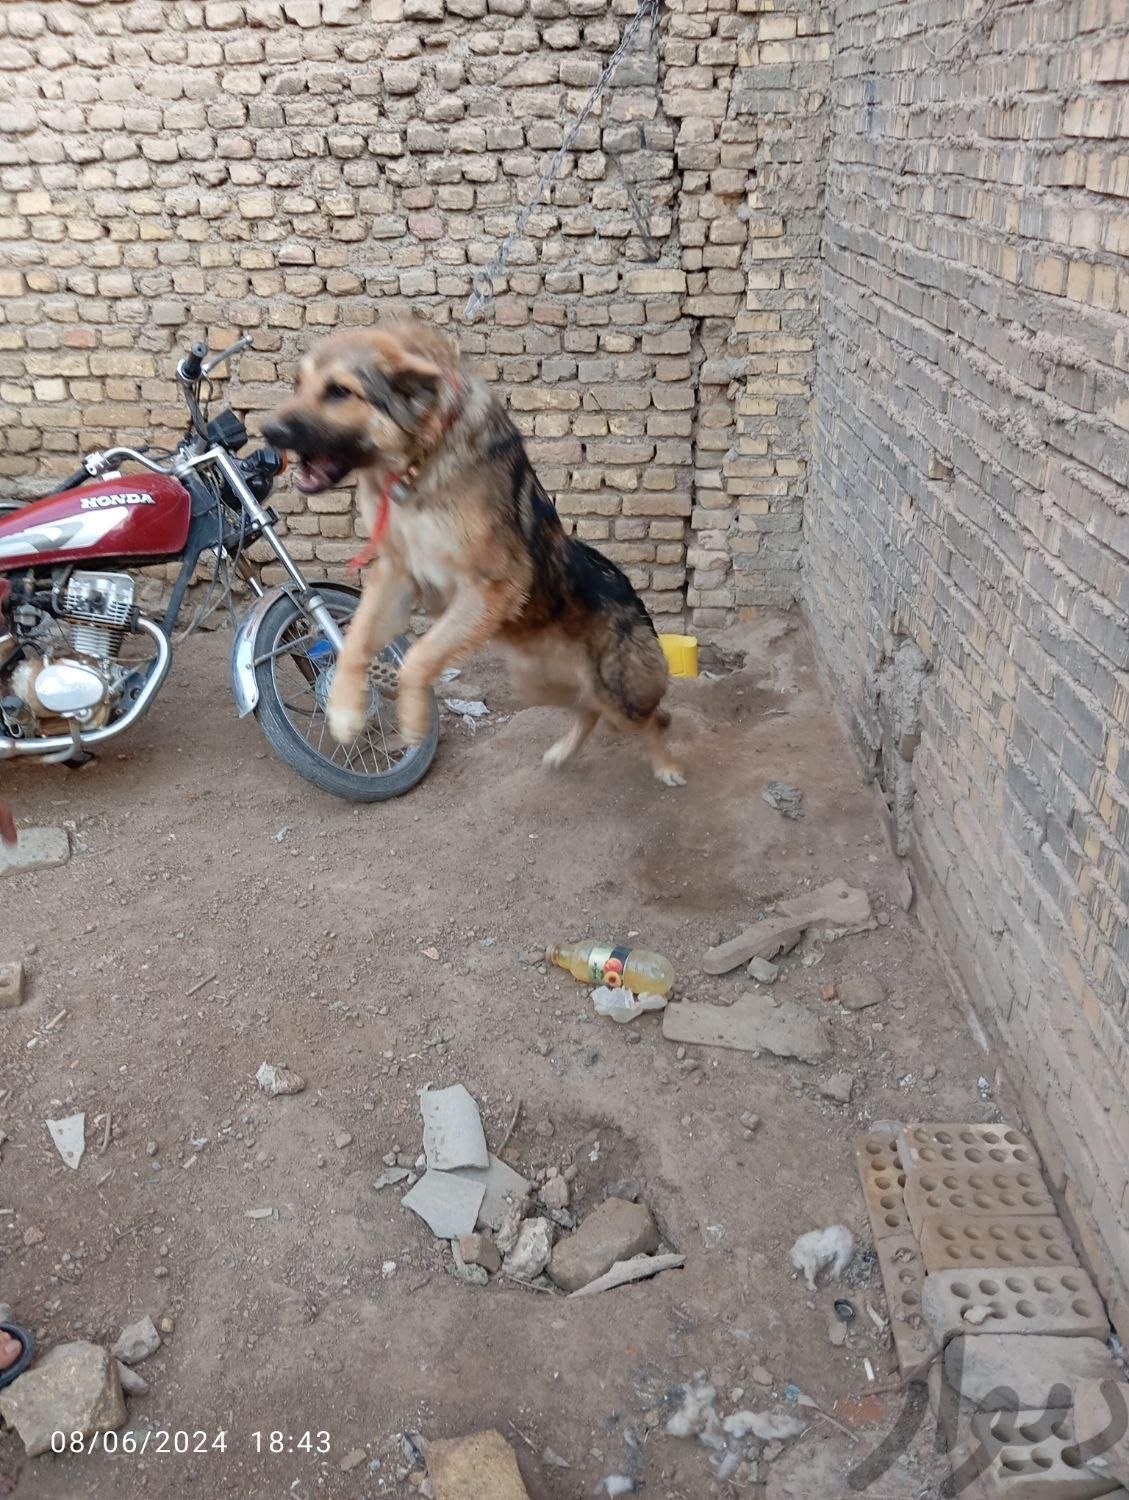 سگ حدودا یک سال|سگ|اصفهان, سودان|دیوار